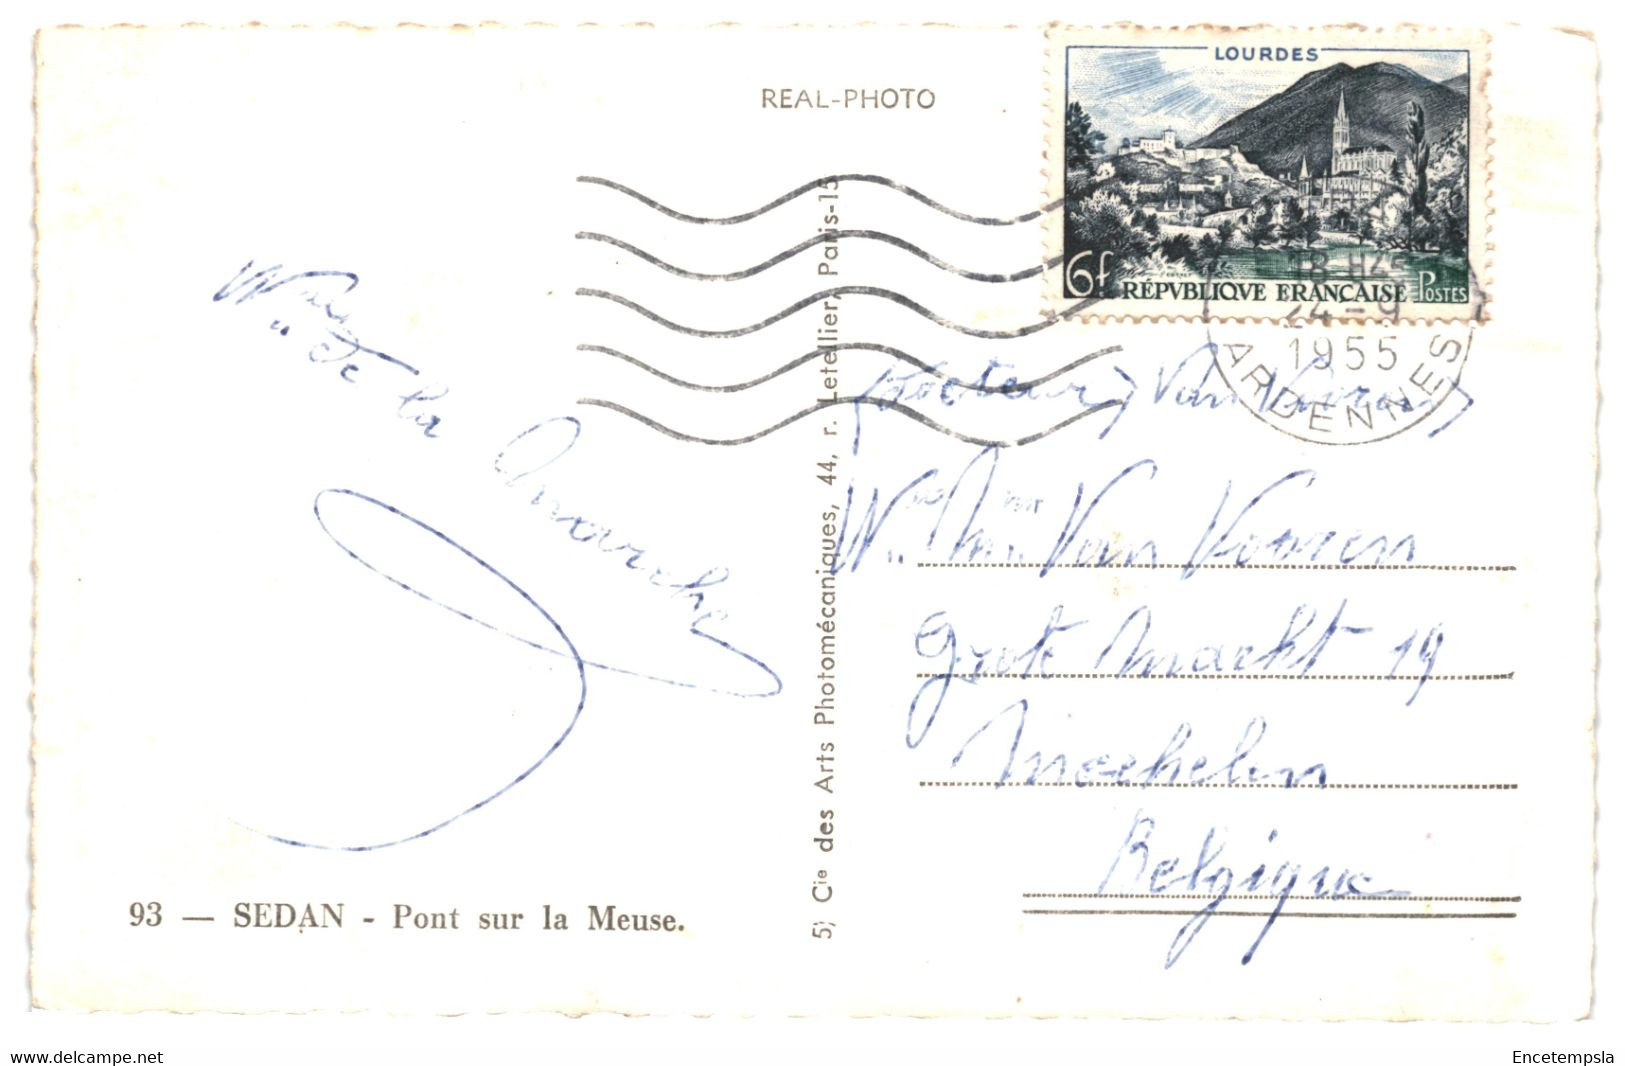 CPA - Carte postale - Lot de 50 cartes postales de France Lourdes  -VMLOUD1